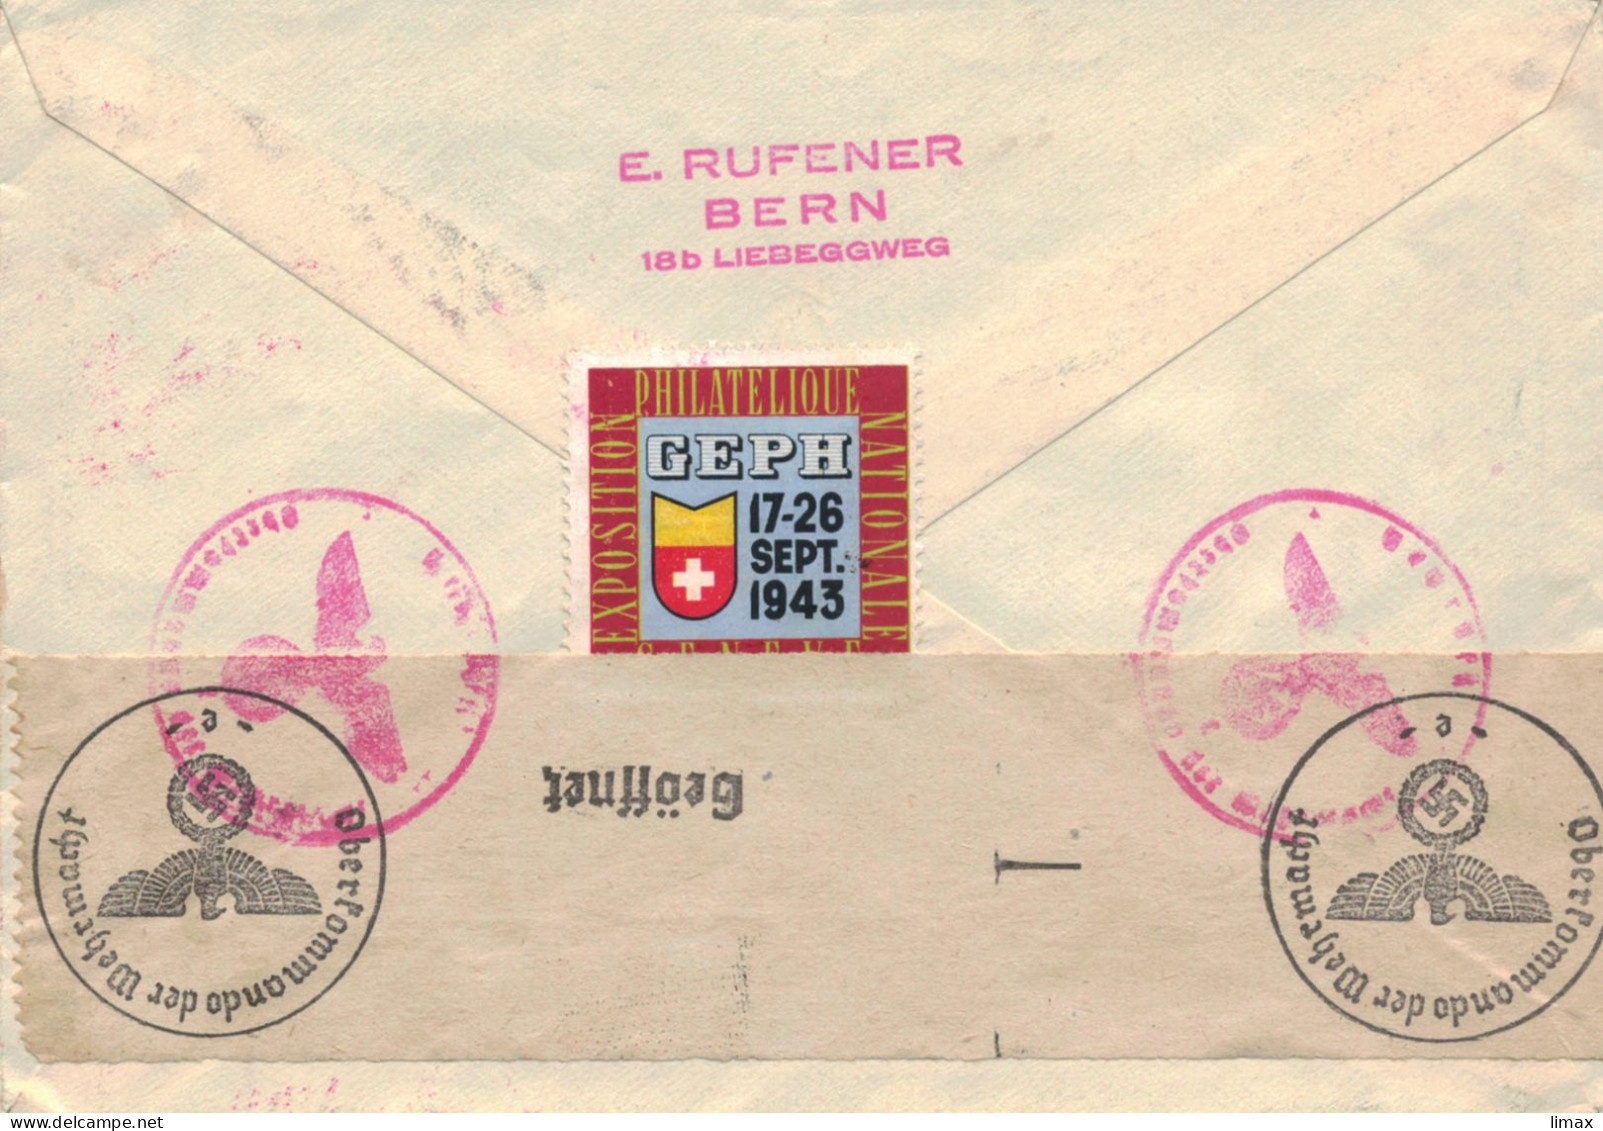 Rufener Zürich 1943 Reko > Schiedam - Zensur OKW - 100 Jahre Schweizer Postmarken - Covers & Documents